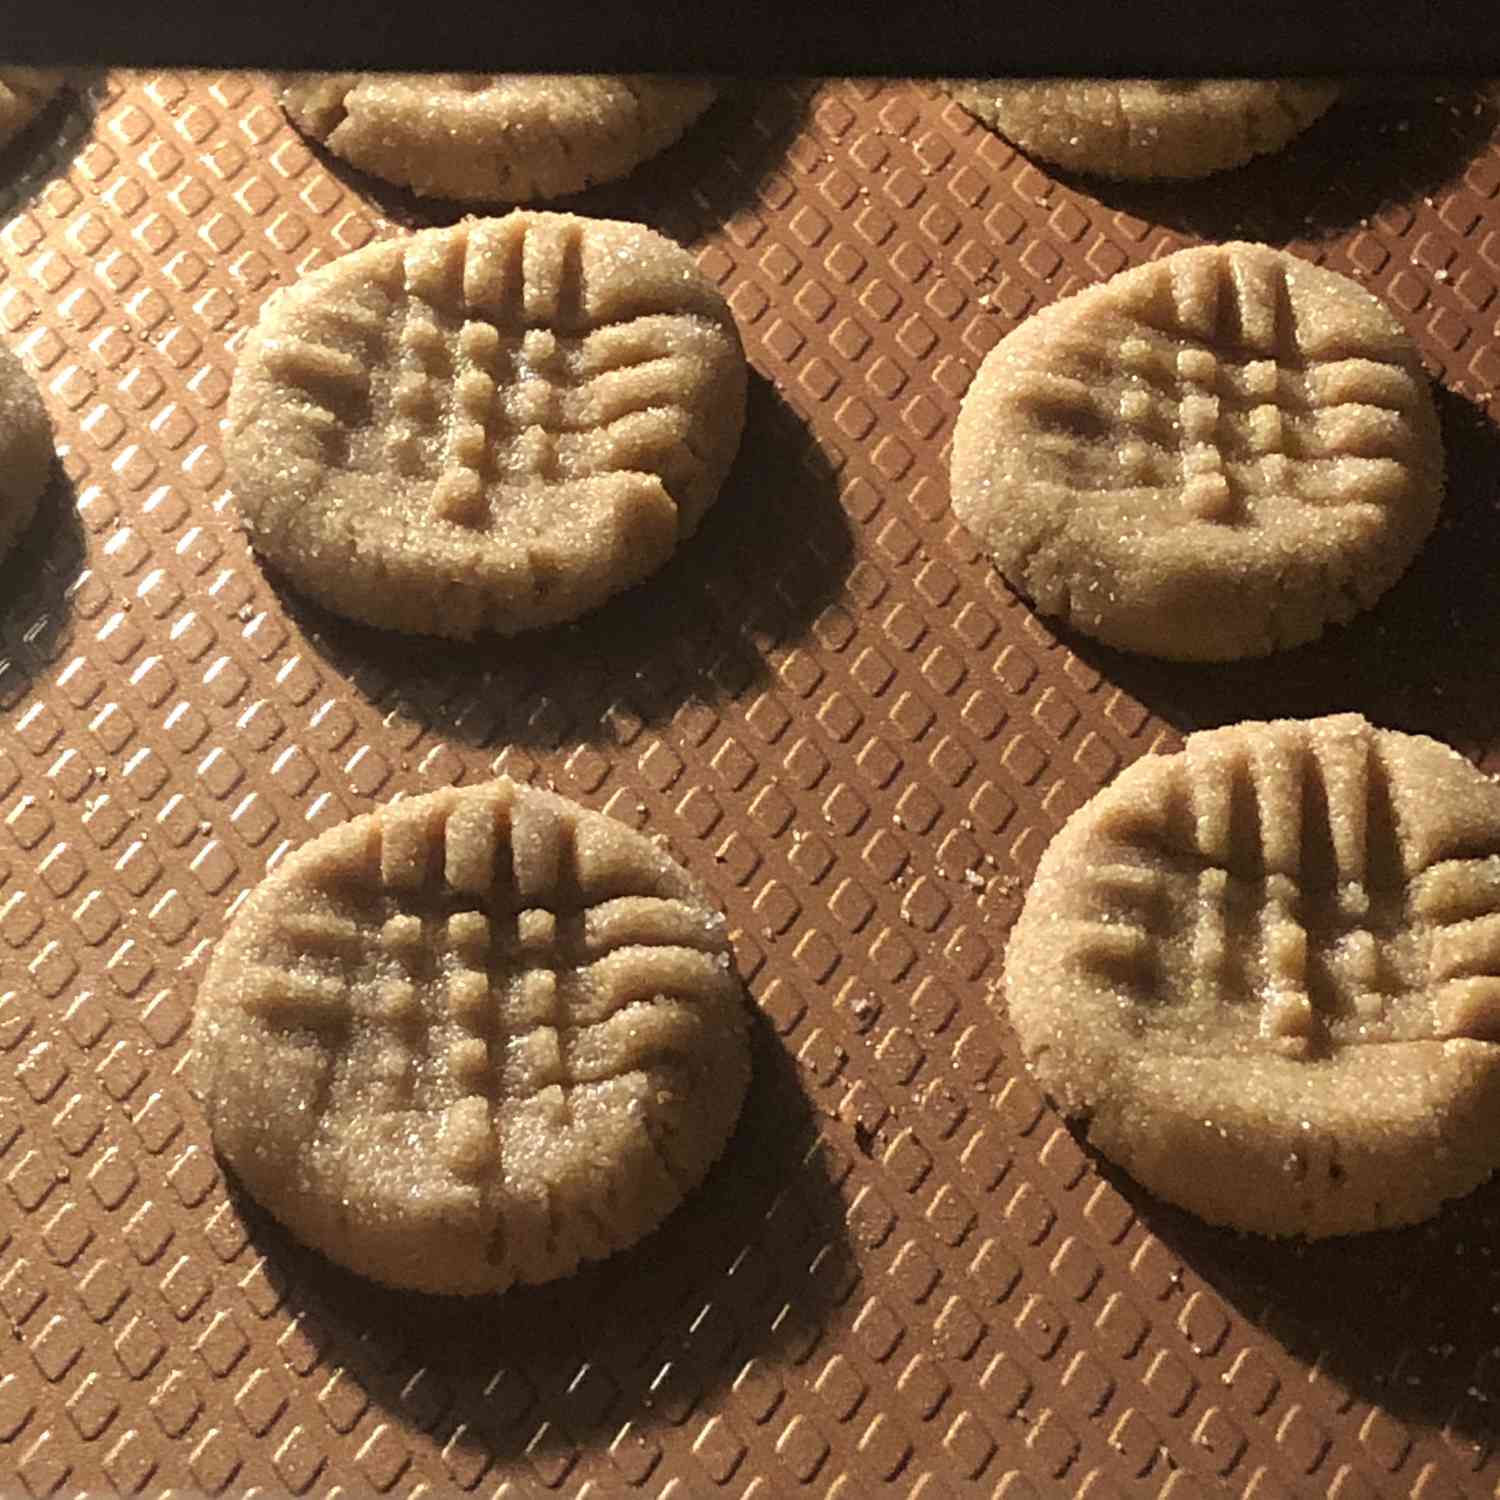 Печенье с арахисовым маслом